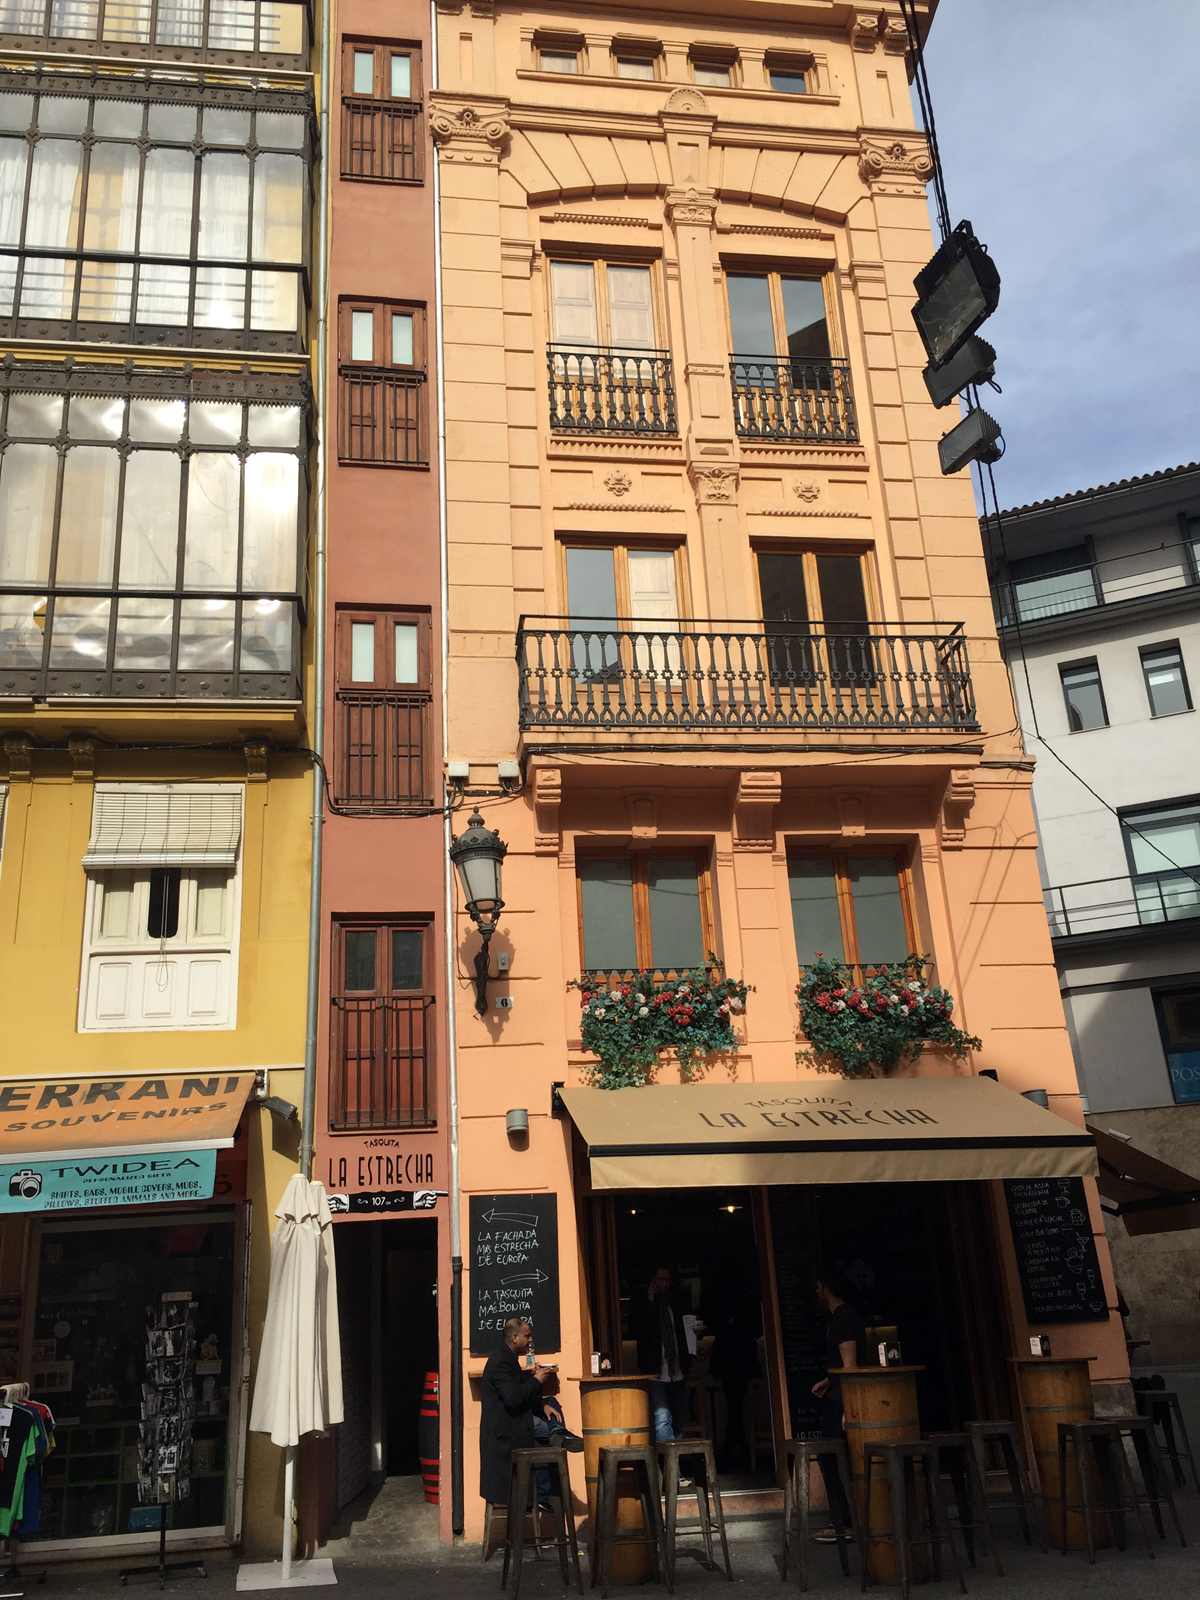 Tasquita La Estrecha. La fachada más estrecha de Europa está en Valencia.